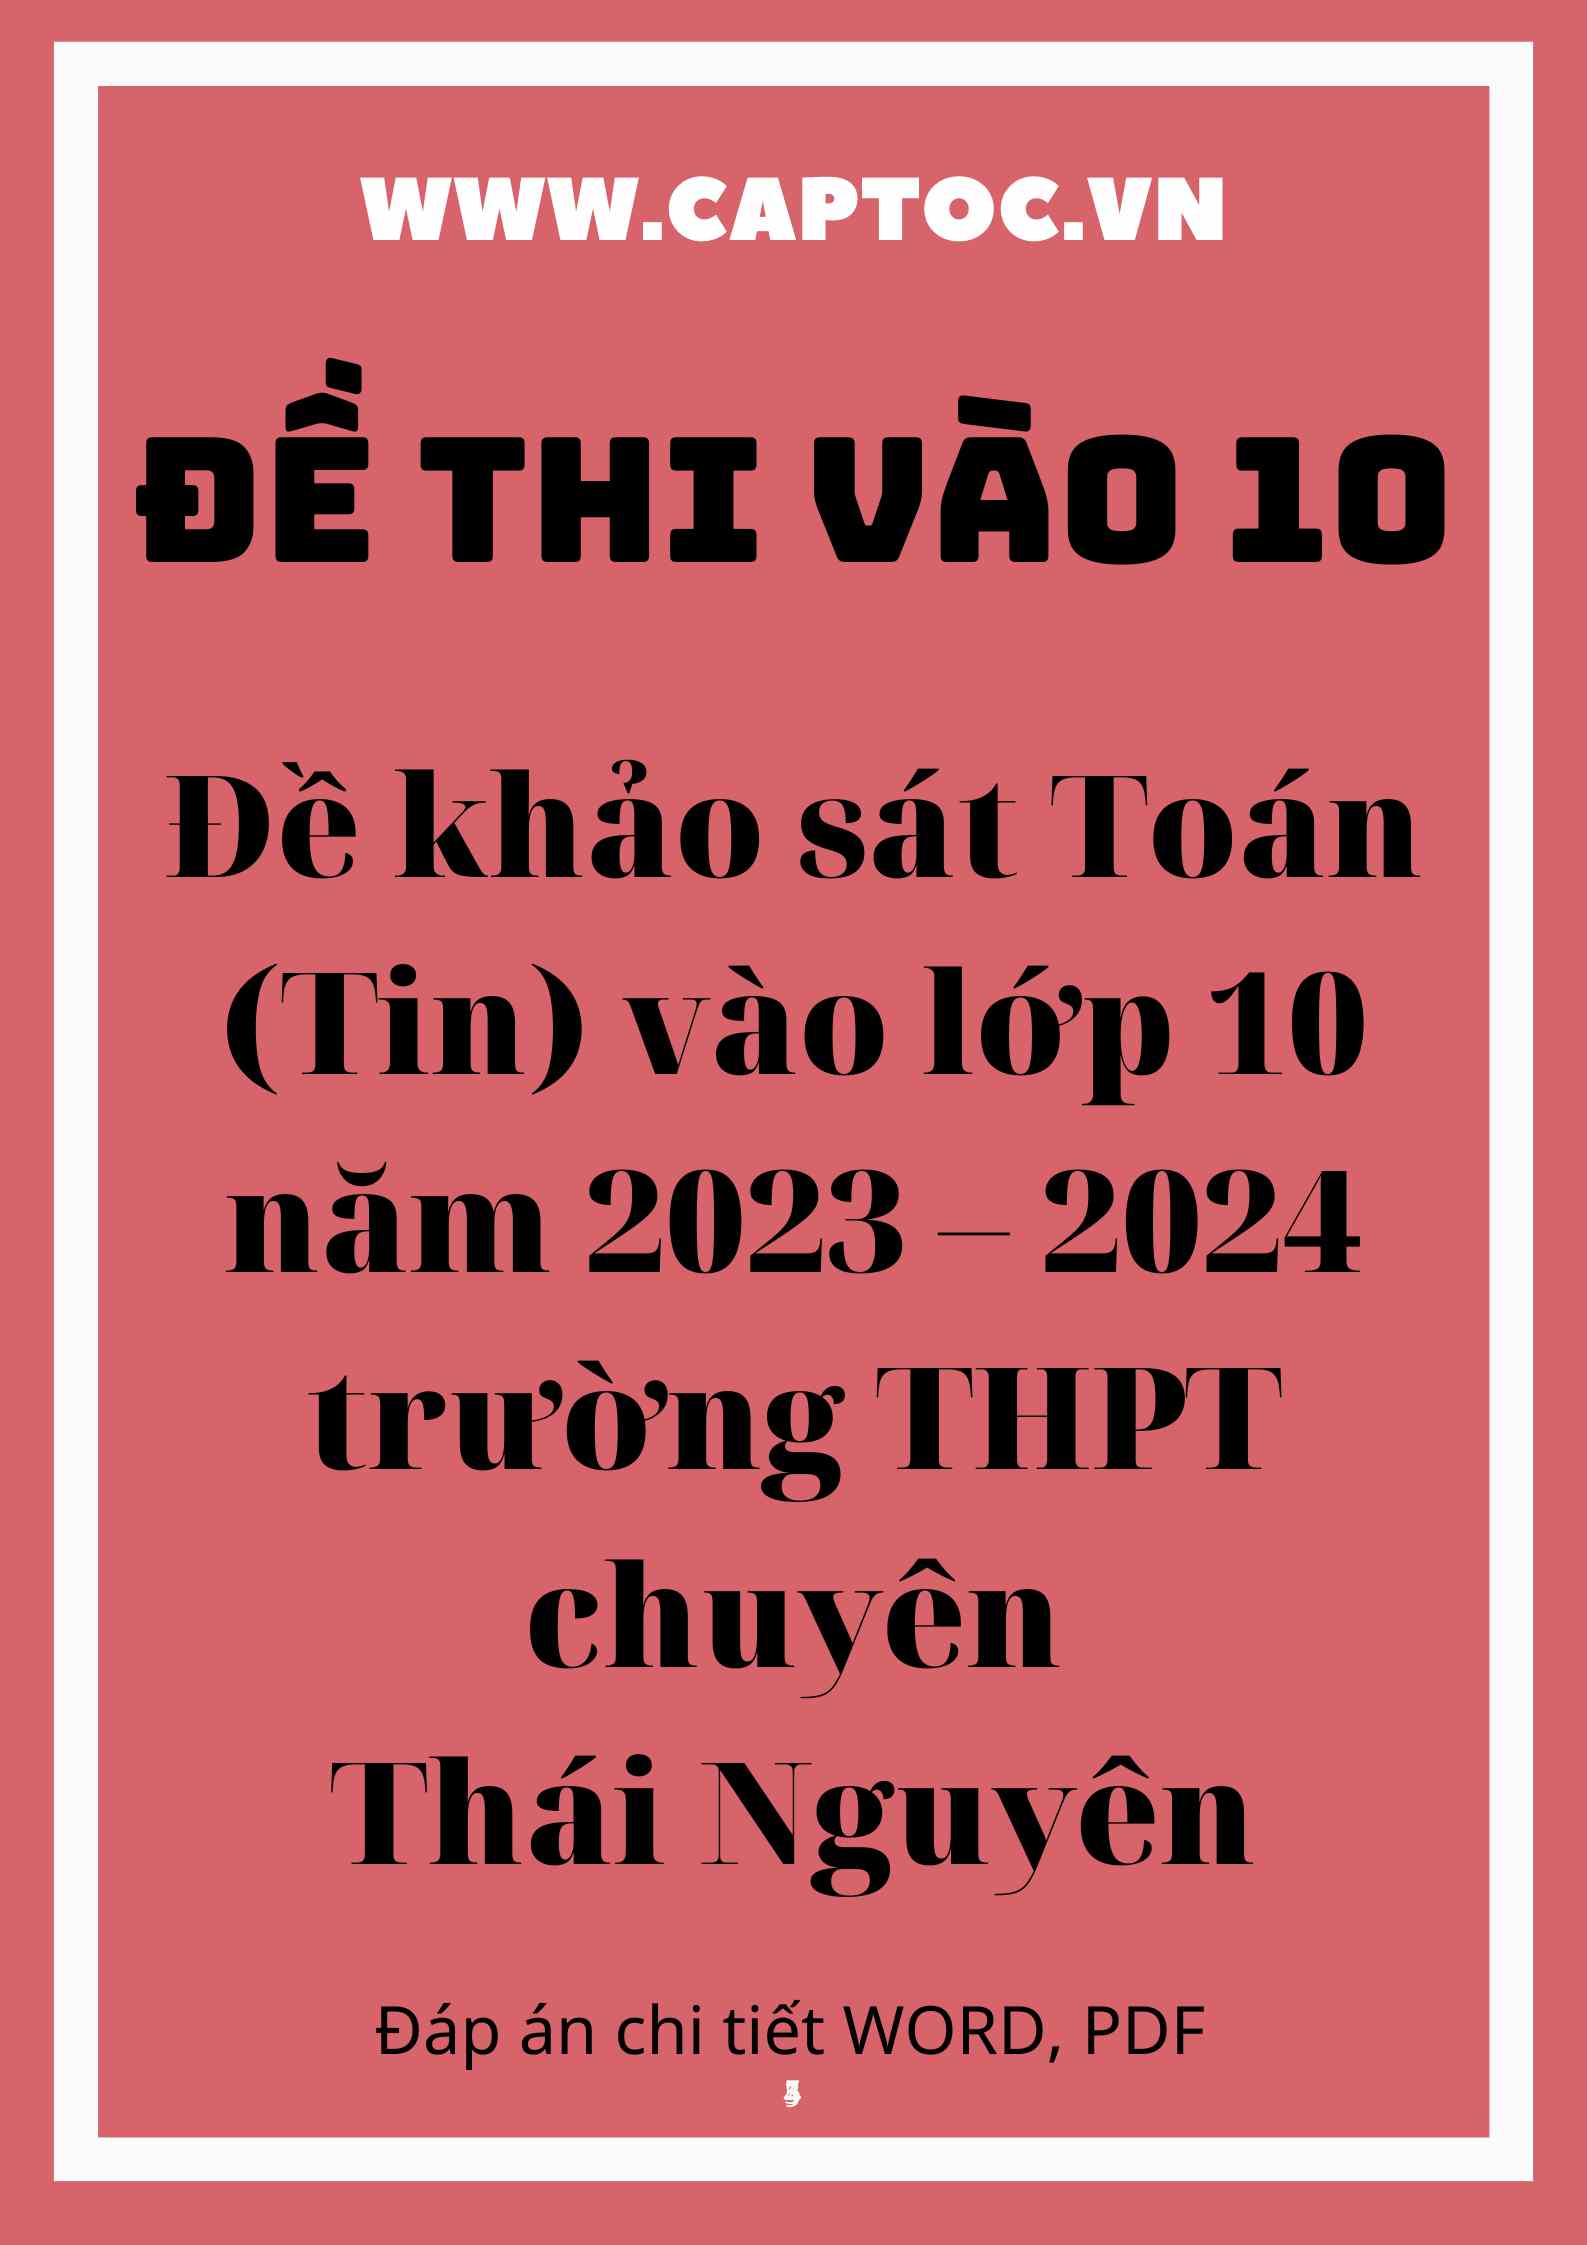 Đề khảo sát Toán (Tin) vào lớp 10 năm 2023 – 2024 trường THPT chuyên Thái Nguyên